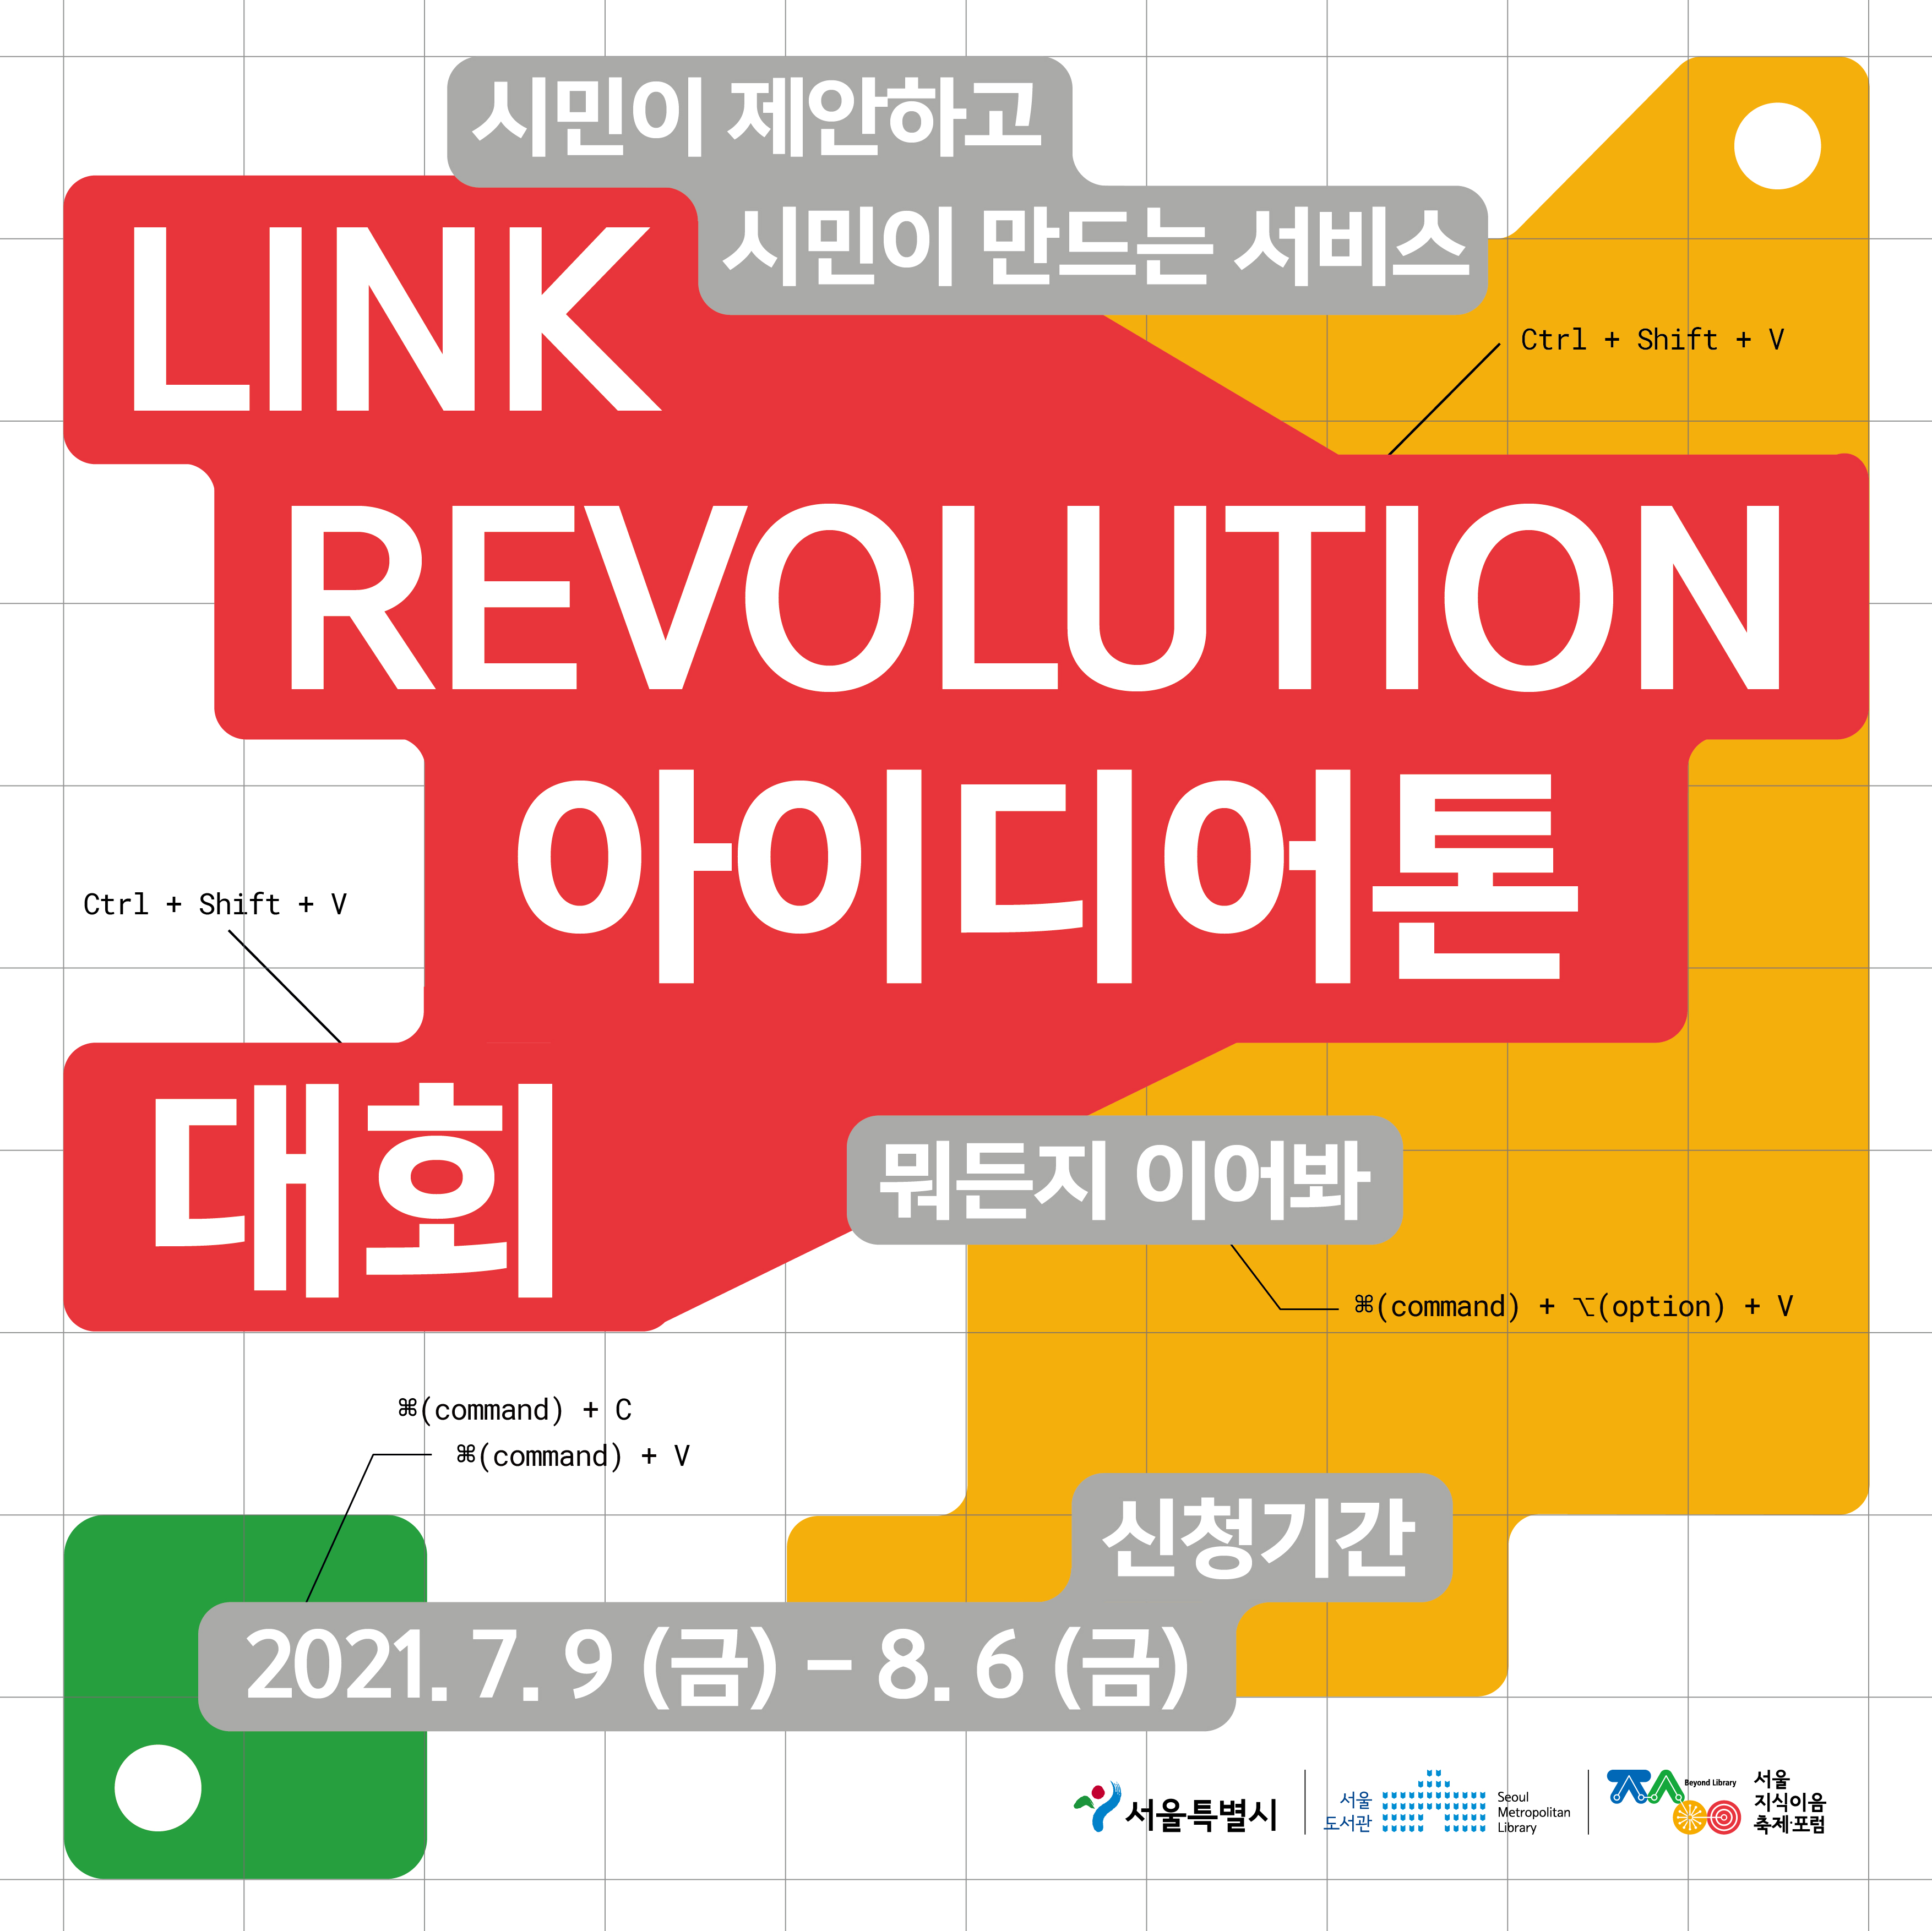 [서울도서관] Link Revolution(아이디어톤 대회) 참가자 모집